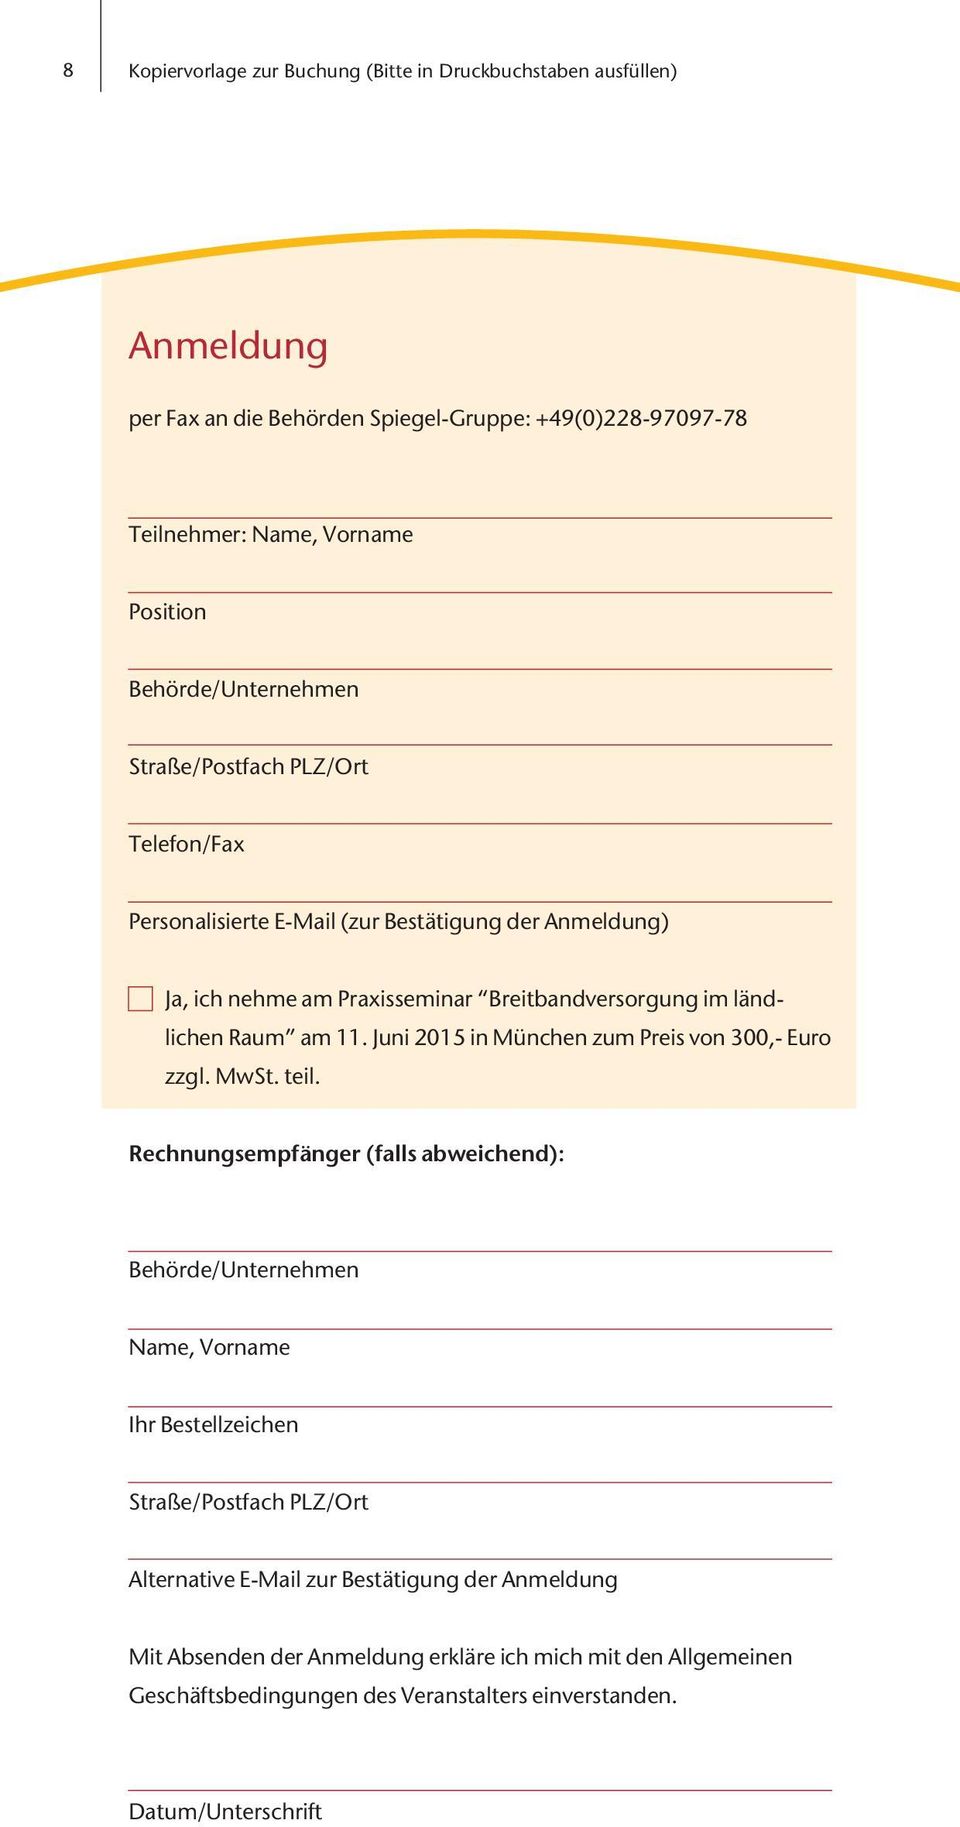 am 11. Juni 2015 in München zum Preis von 300,- Euro zzgl. MwSt. teil.